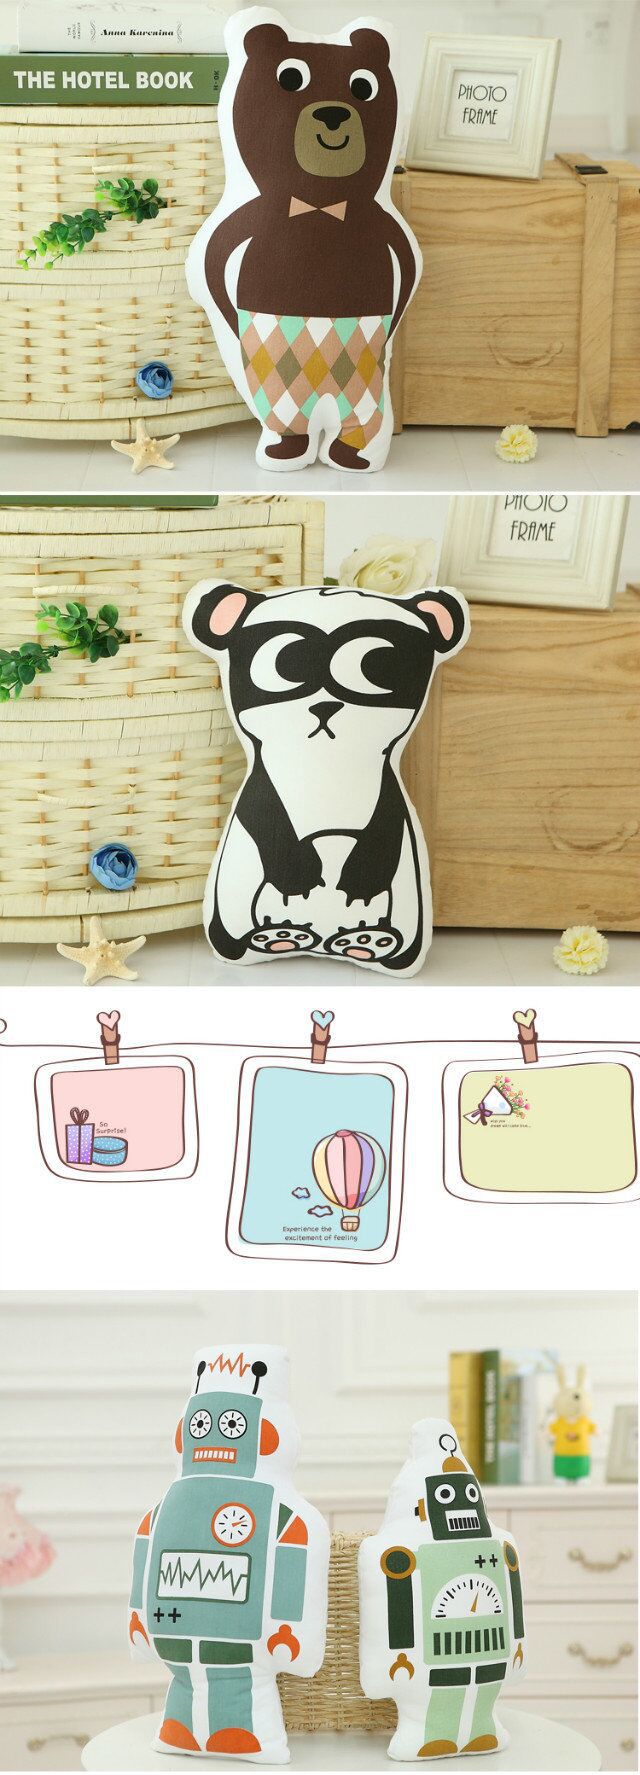 Cool-Cute-Robot-Panda-Brown-Bear-Throw-Pillow-Sofa-Bed-Car-Office-Cotton-Cloth-Cushion-Home-Decor-1028410-5